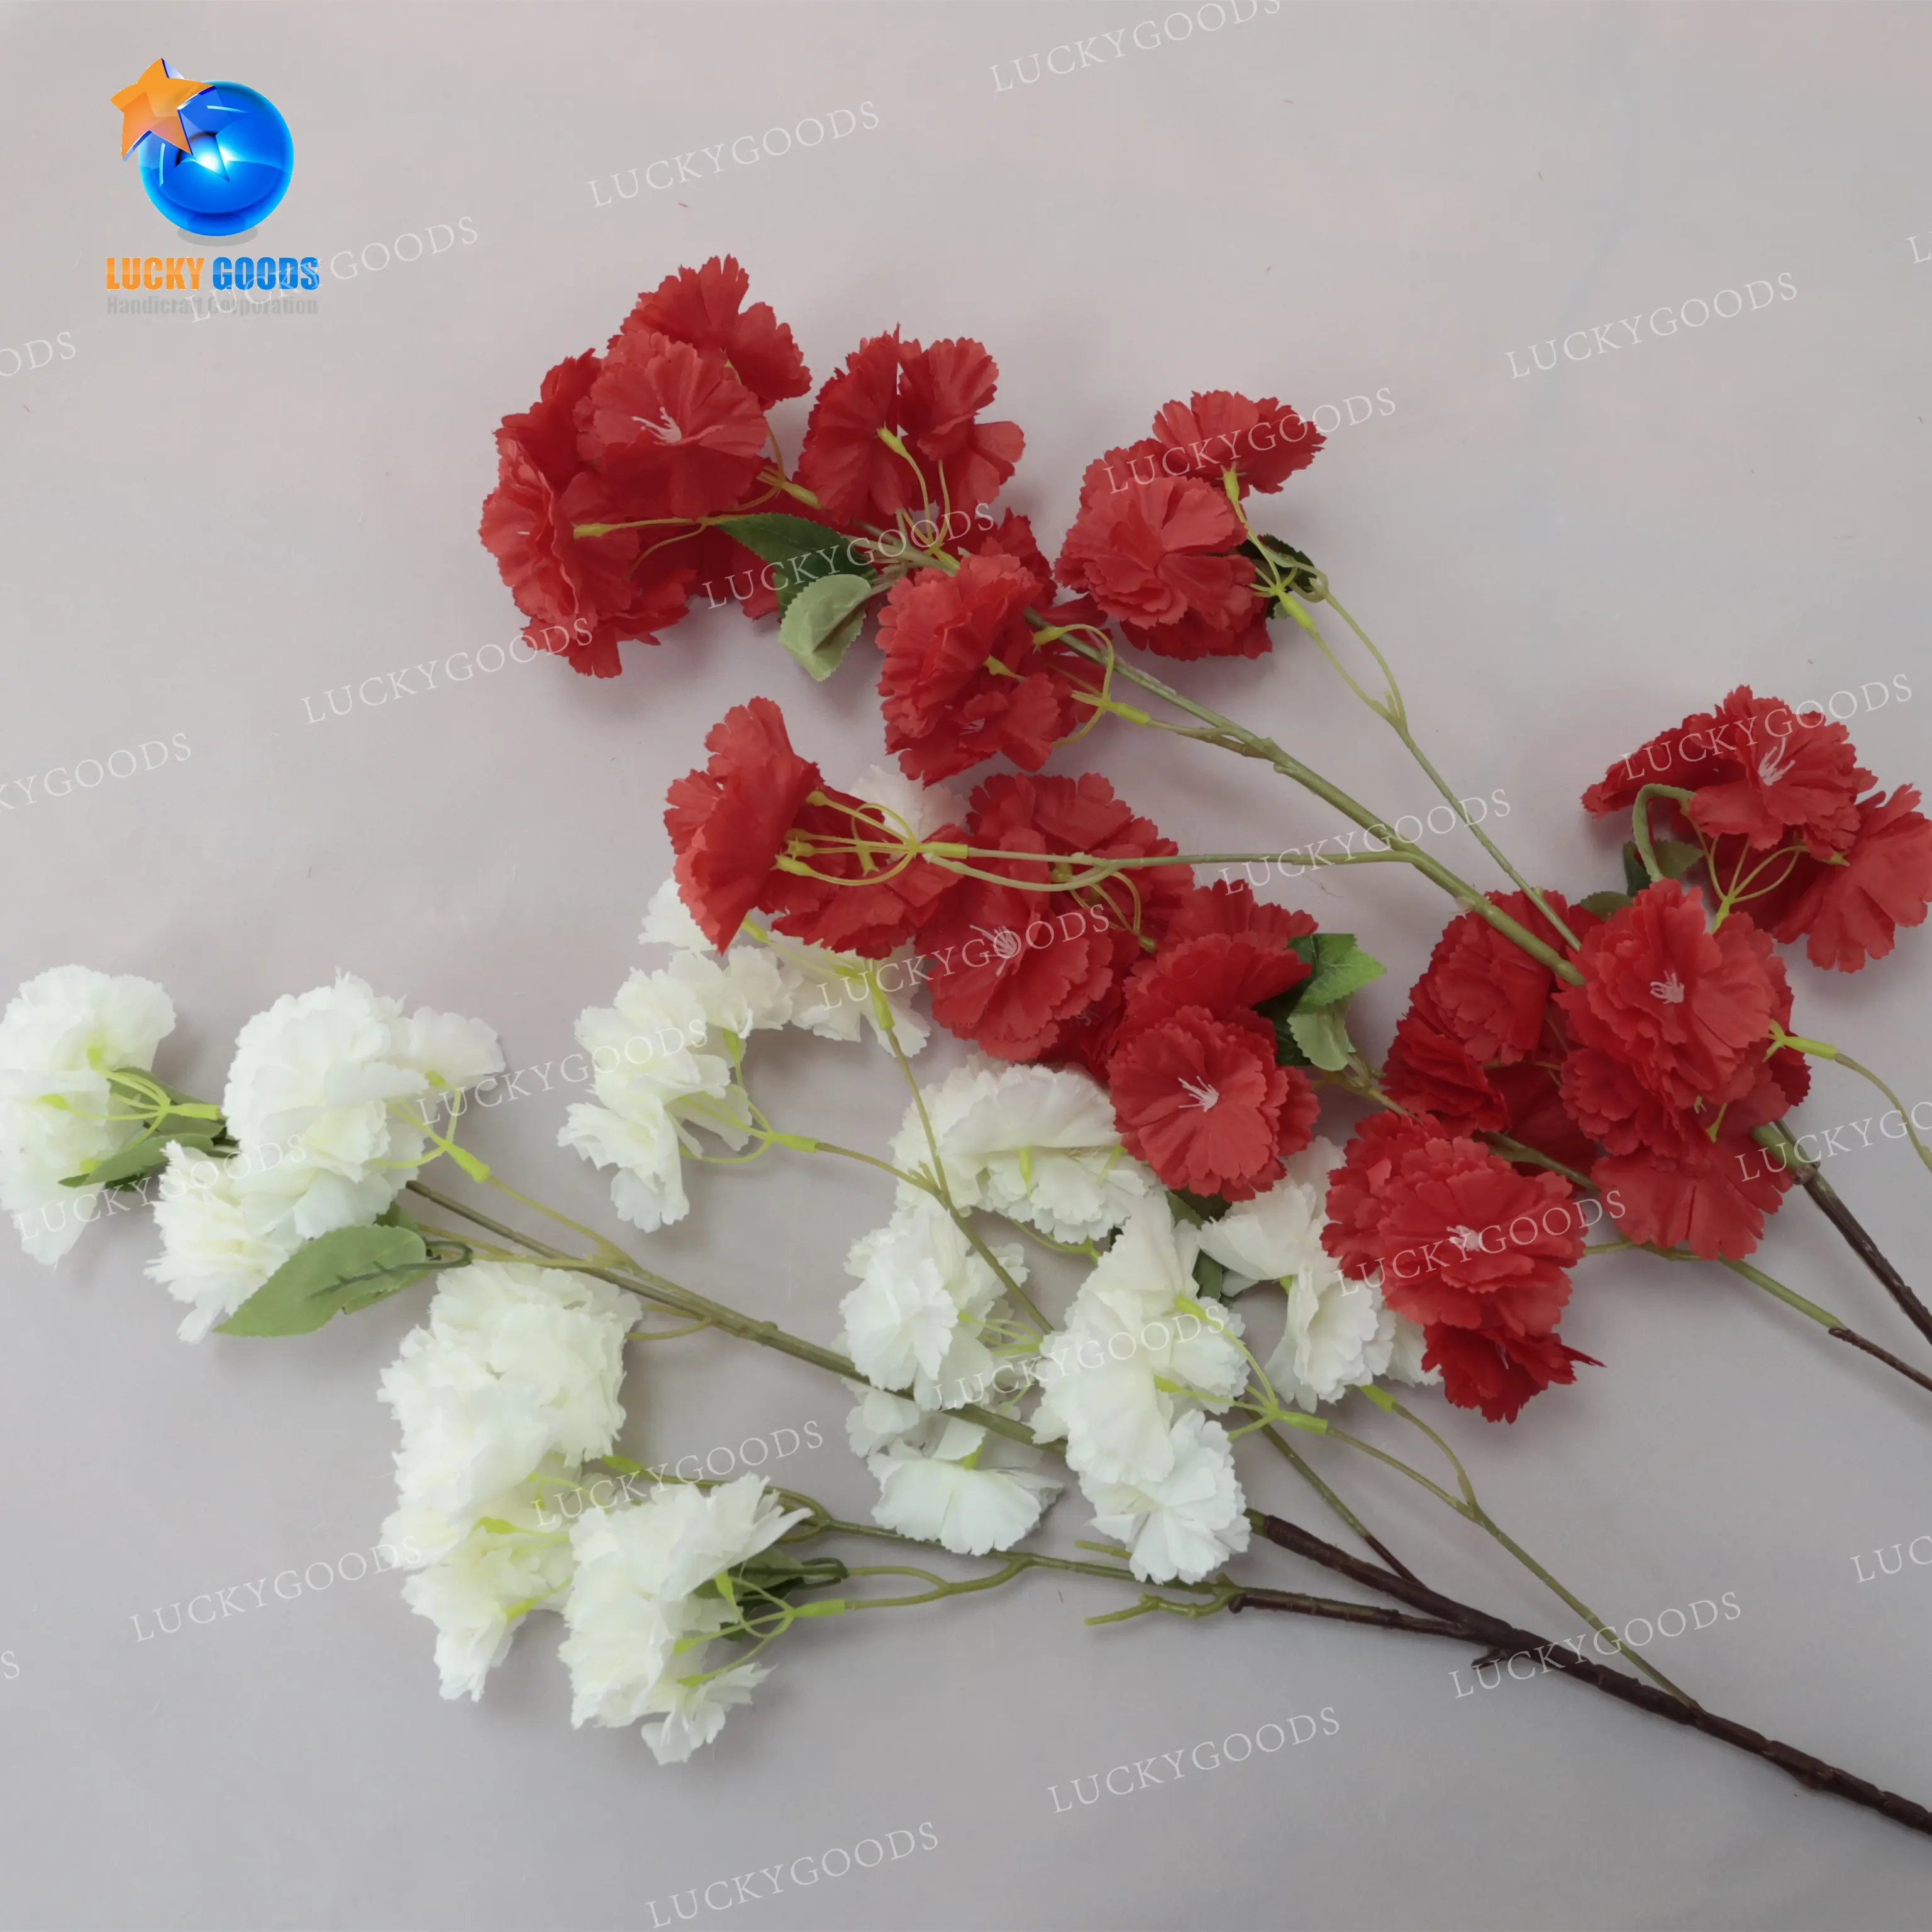 LG20190606-5 Luckygoods-Flores artificiales, decoración de boda, Flores de cerezo